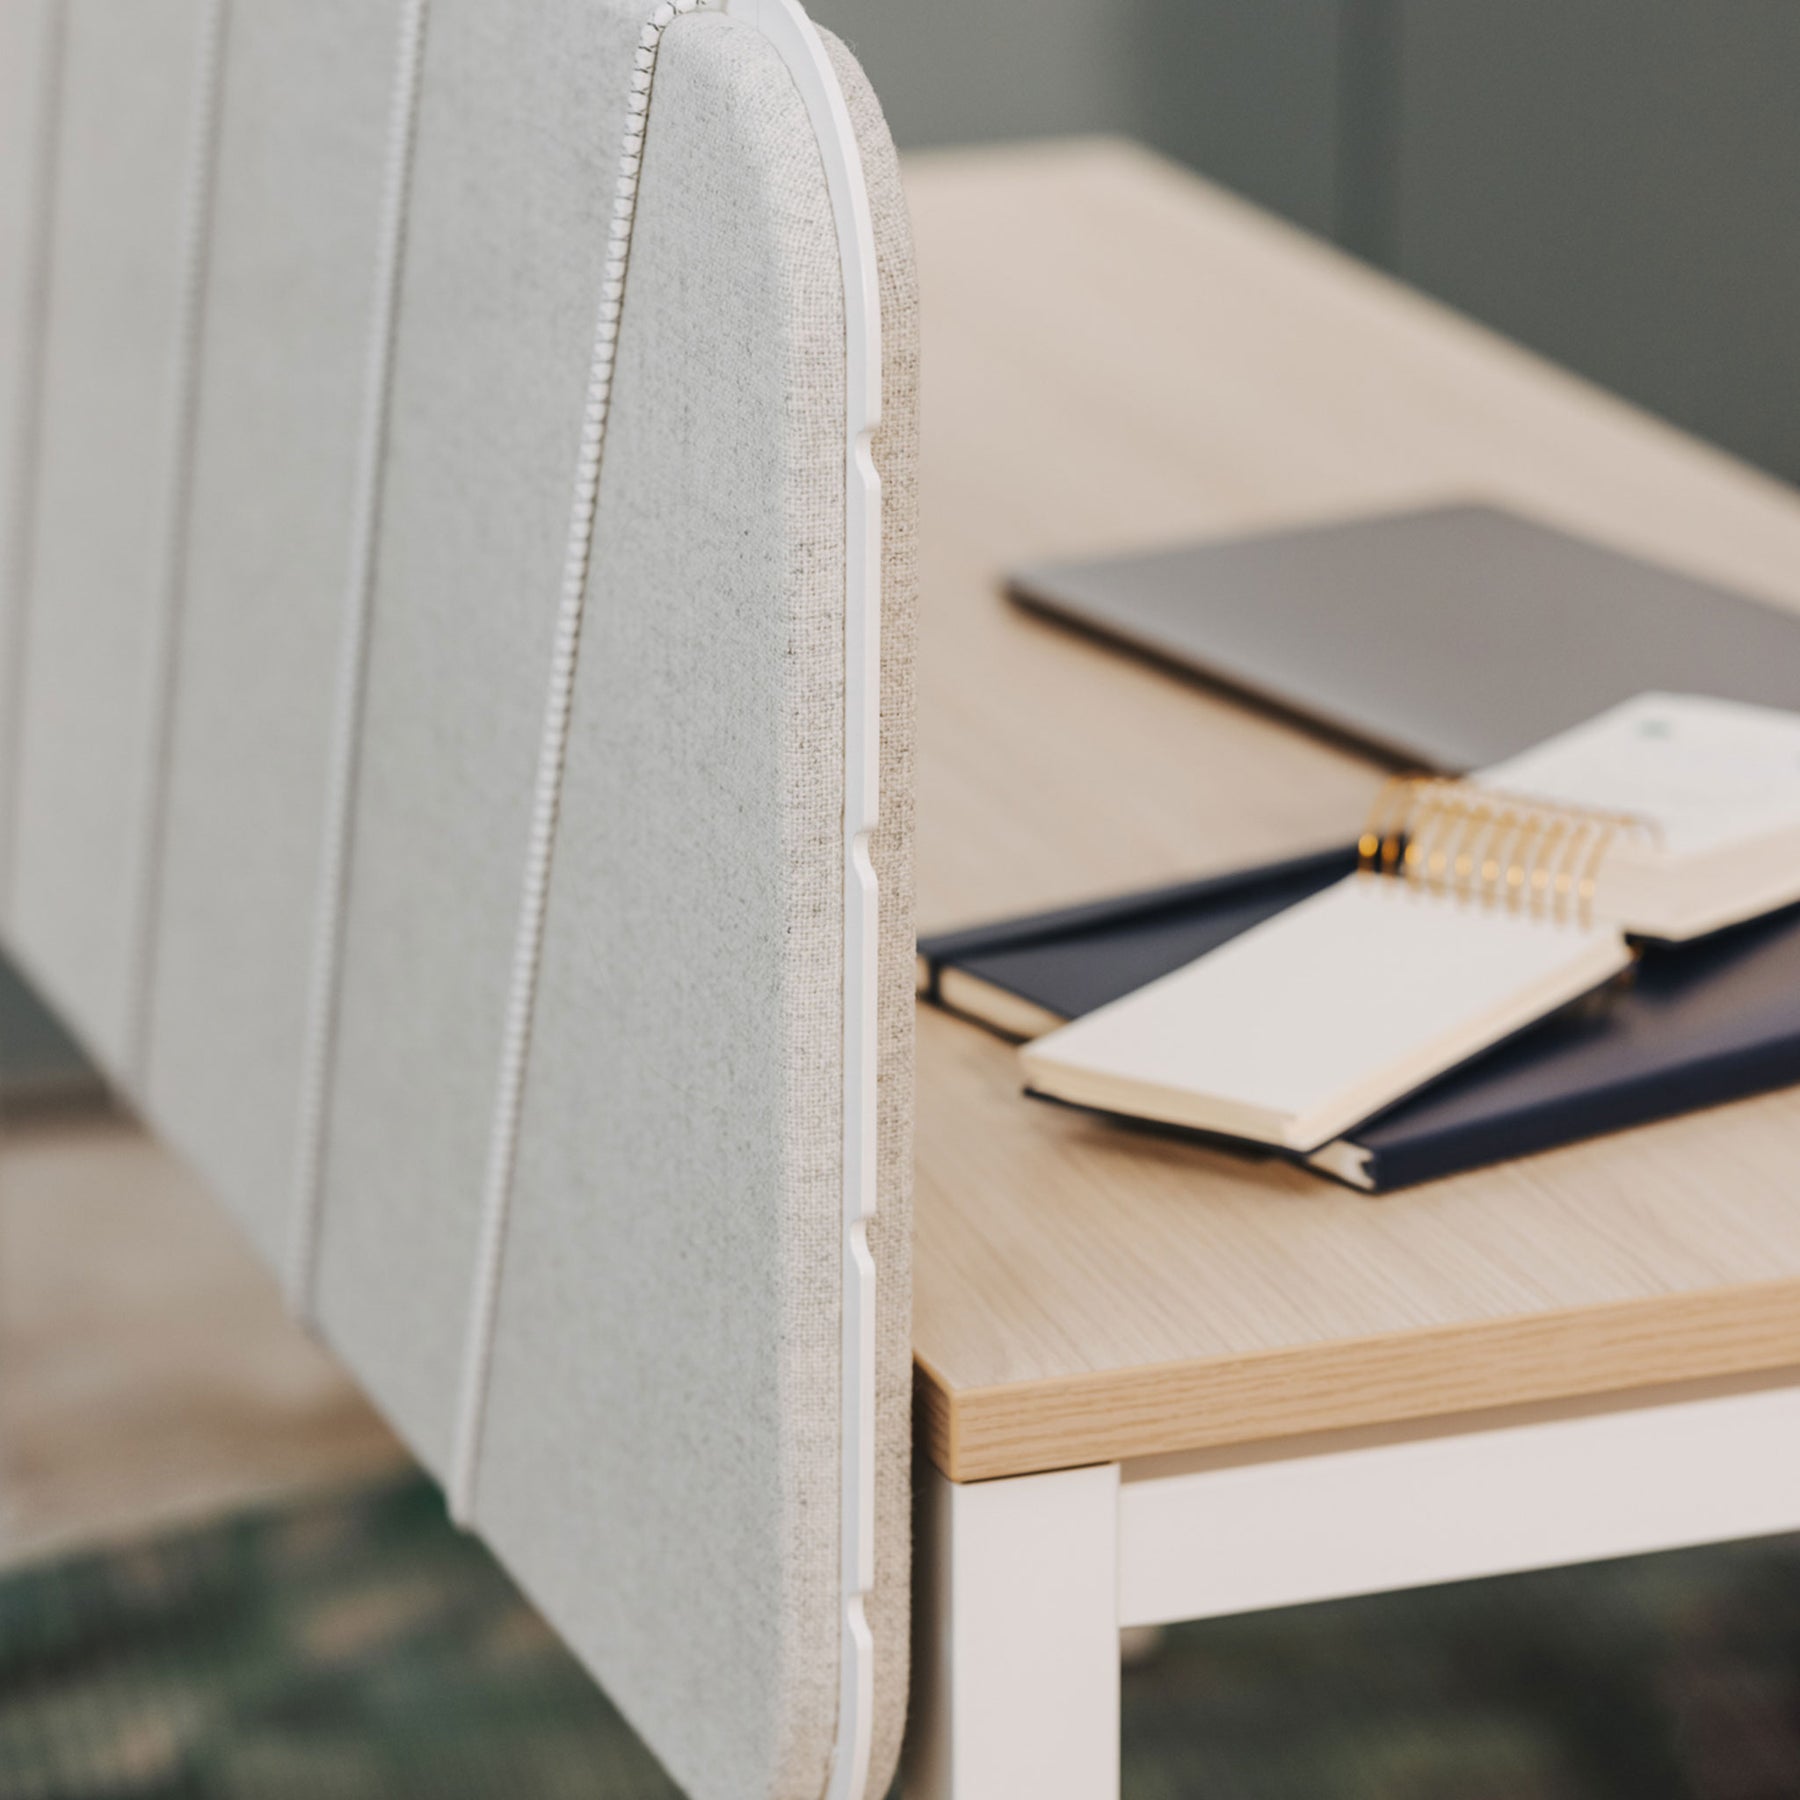 Man sieht in Nahaufnahme einen Arbeitsplatz mit Holz-Tischplatte und der Pinnwand in grauem Stoff und weißer Umrandung. Die Flexbänder sind weiß. Auf dem Tisch liegen mehrere Notizbücher.